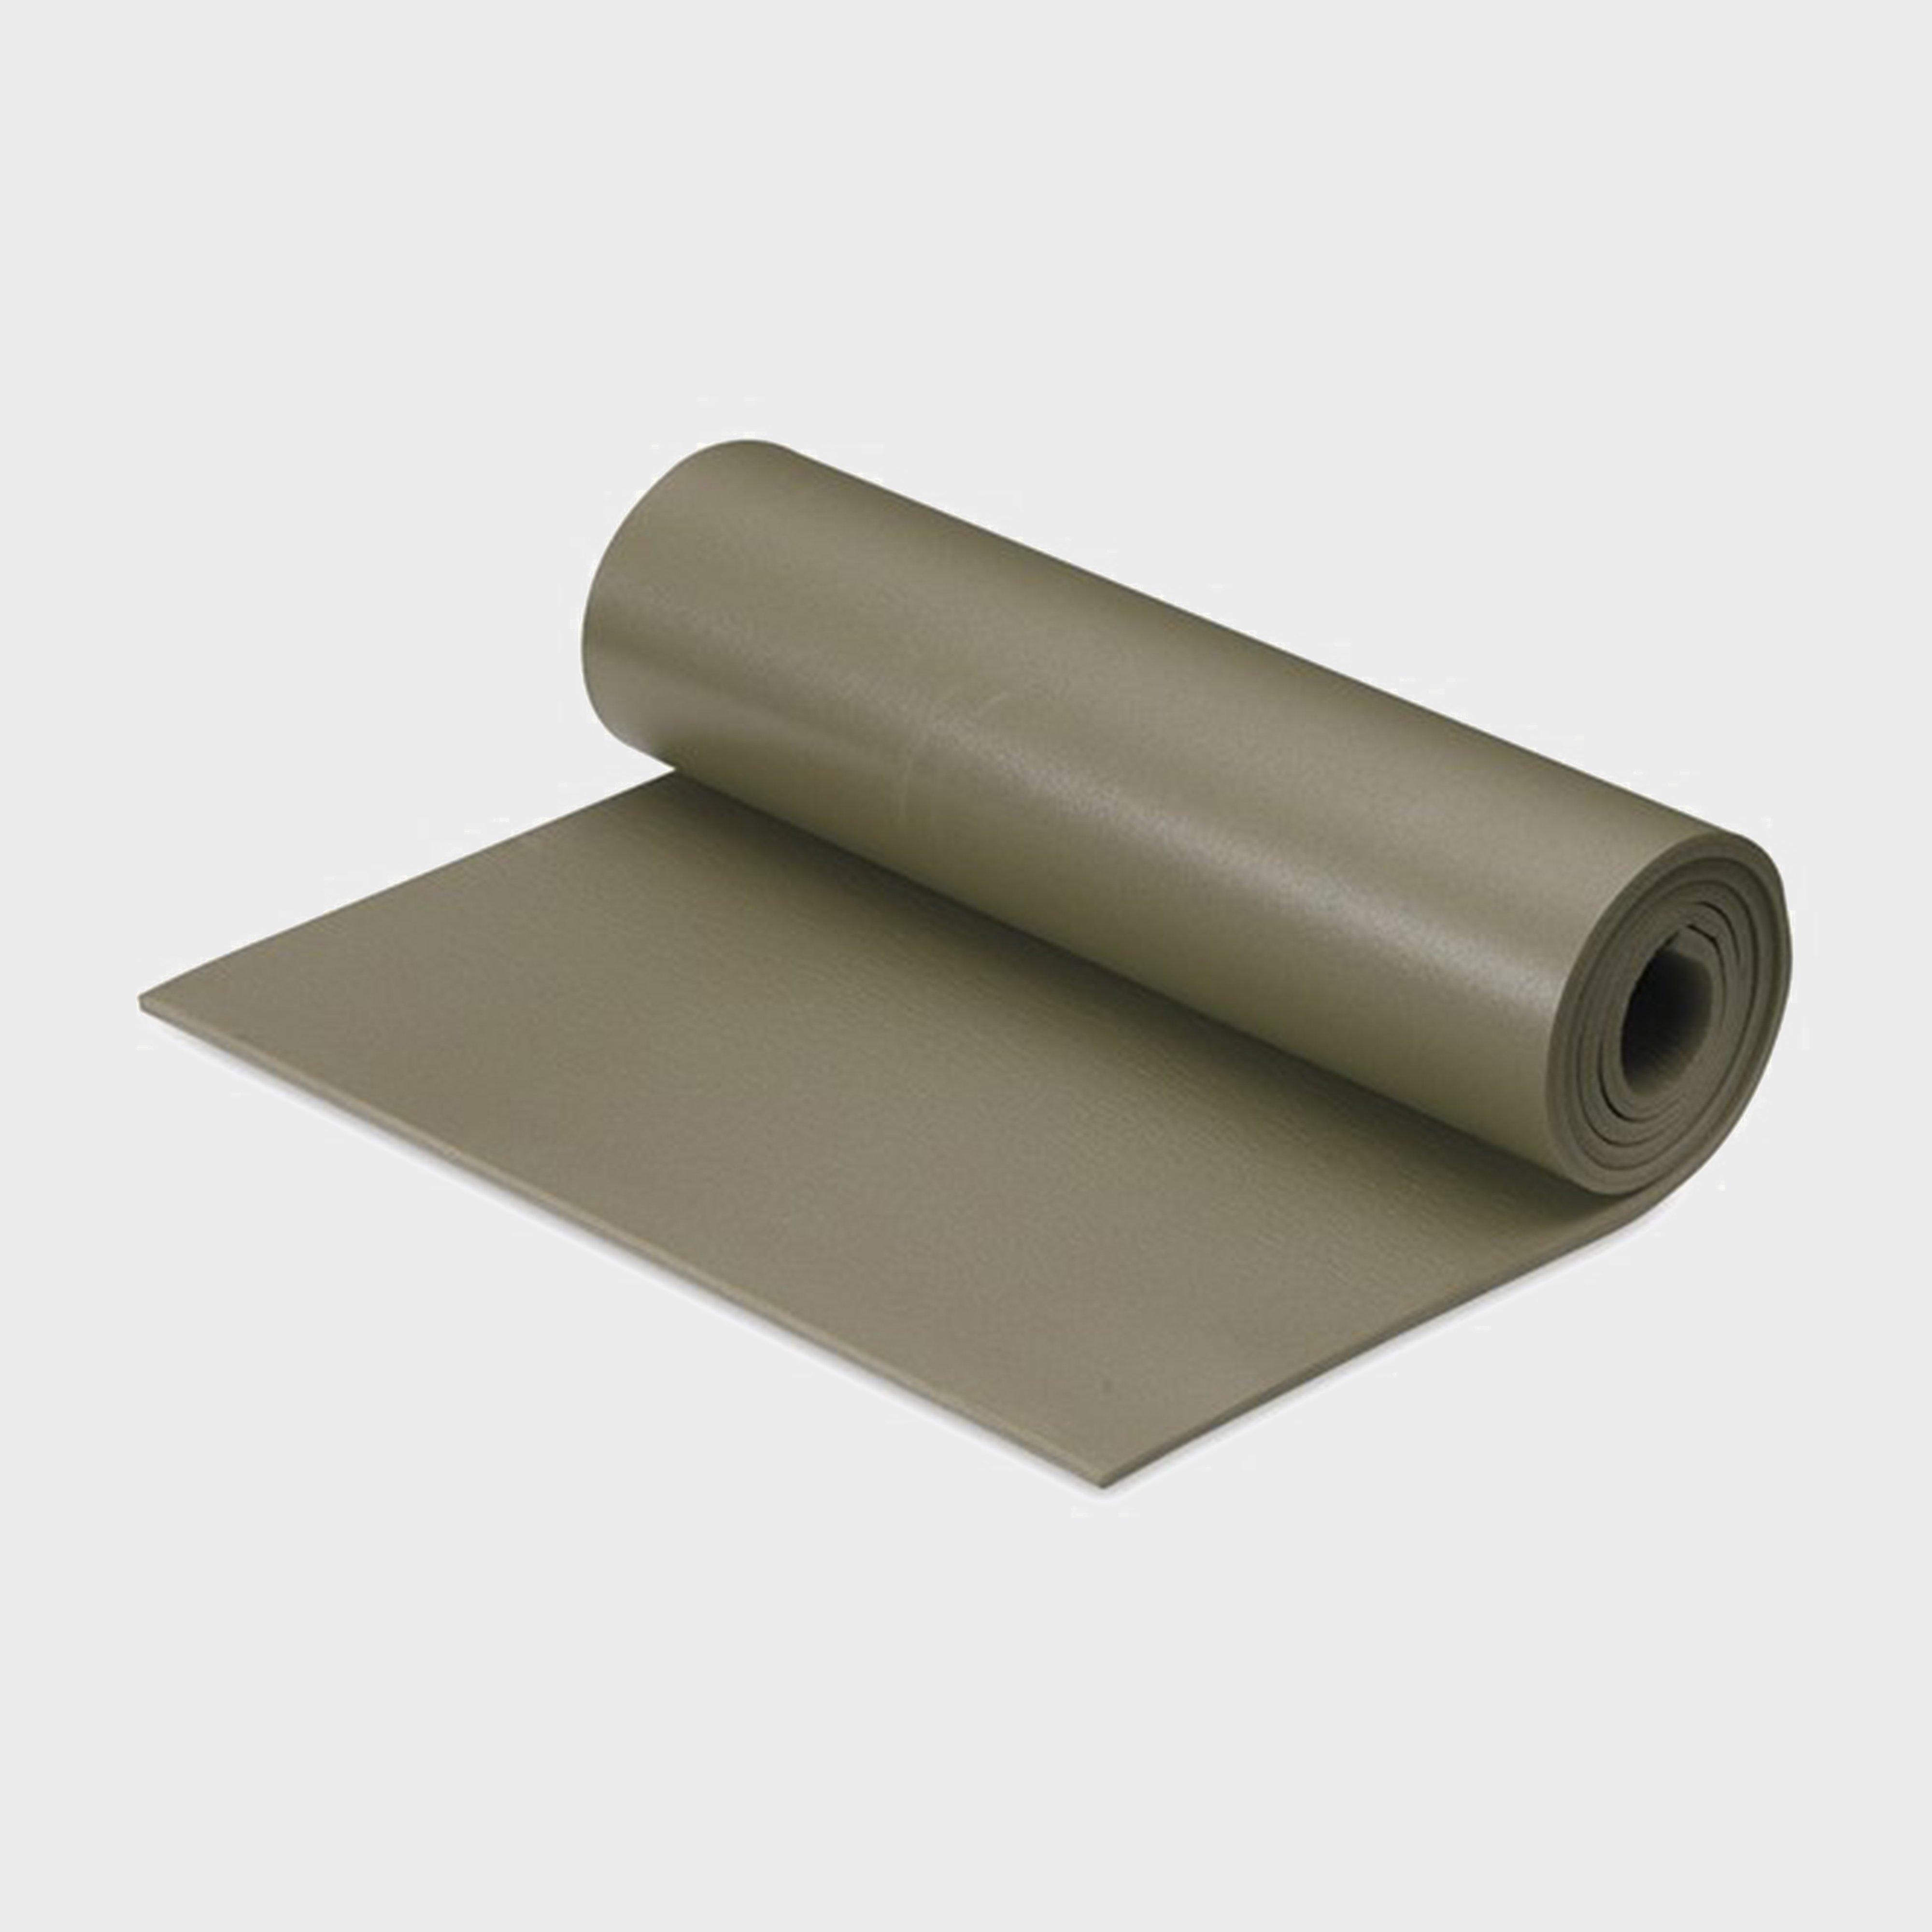 Hi-gear Military Foam Sleeping Mat - Green/mat  Green/mat